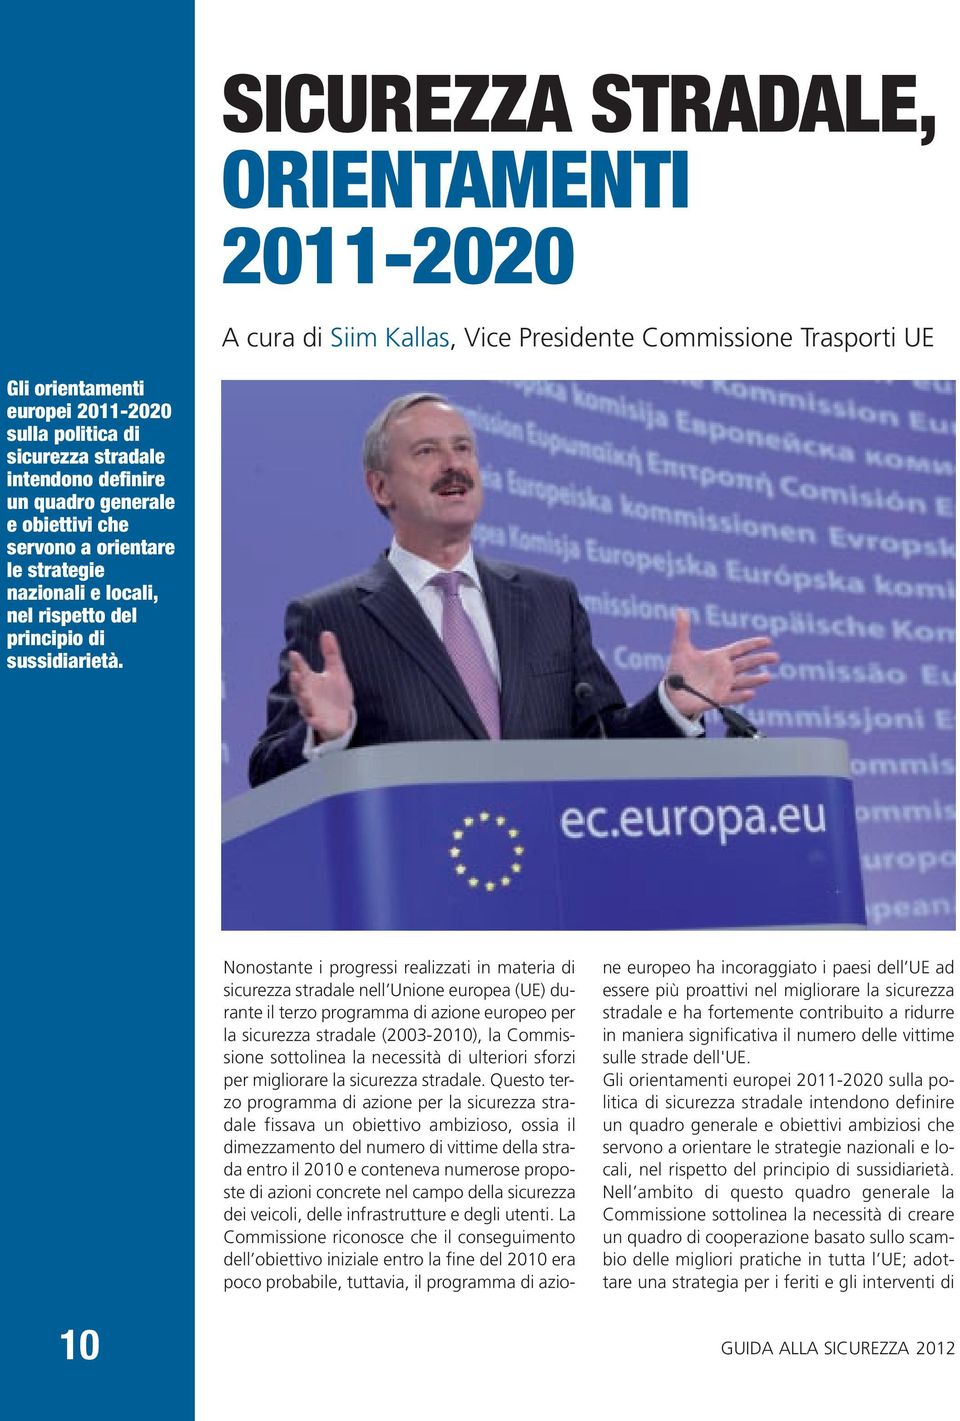 Nonostante i progressi realizzati in materia di sicurezza stradale nell Unione europea (UE) durante il terzo programma di azione europeo per la sicurezza stradale (2003-2010), la Commissione